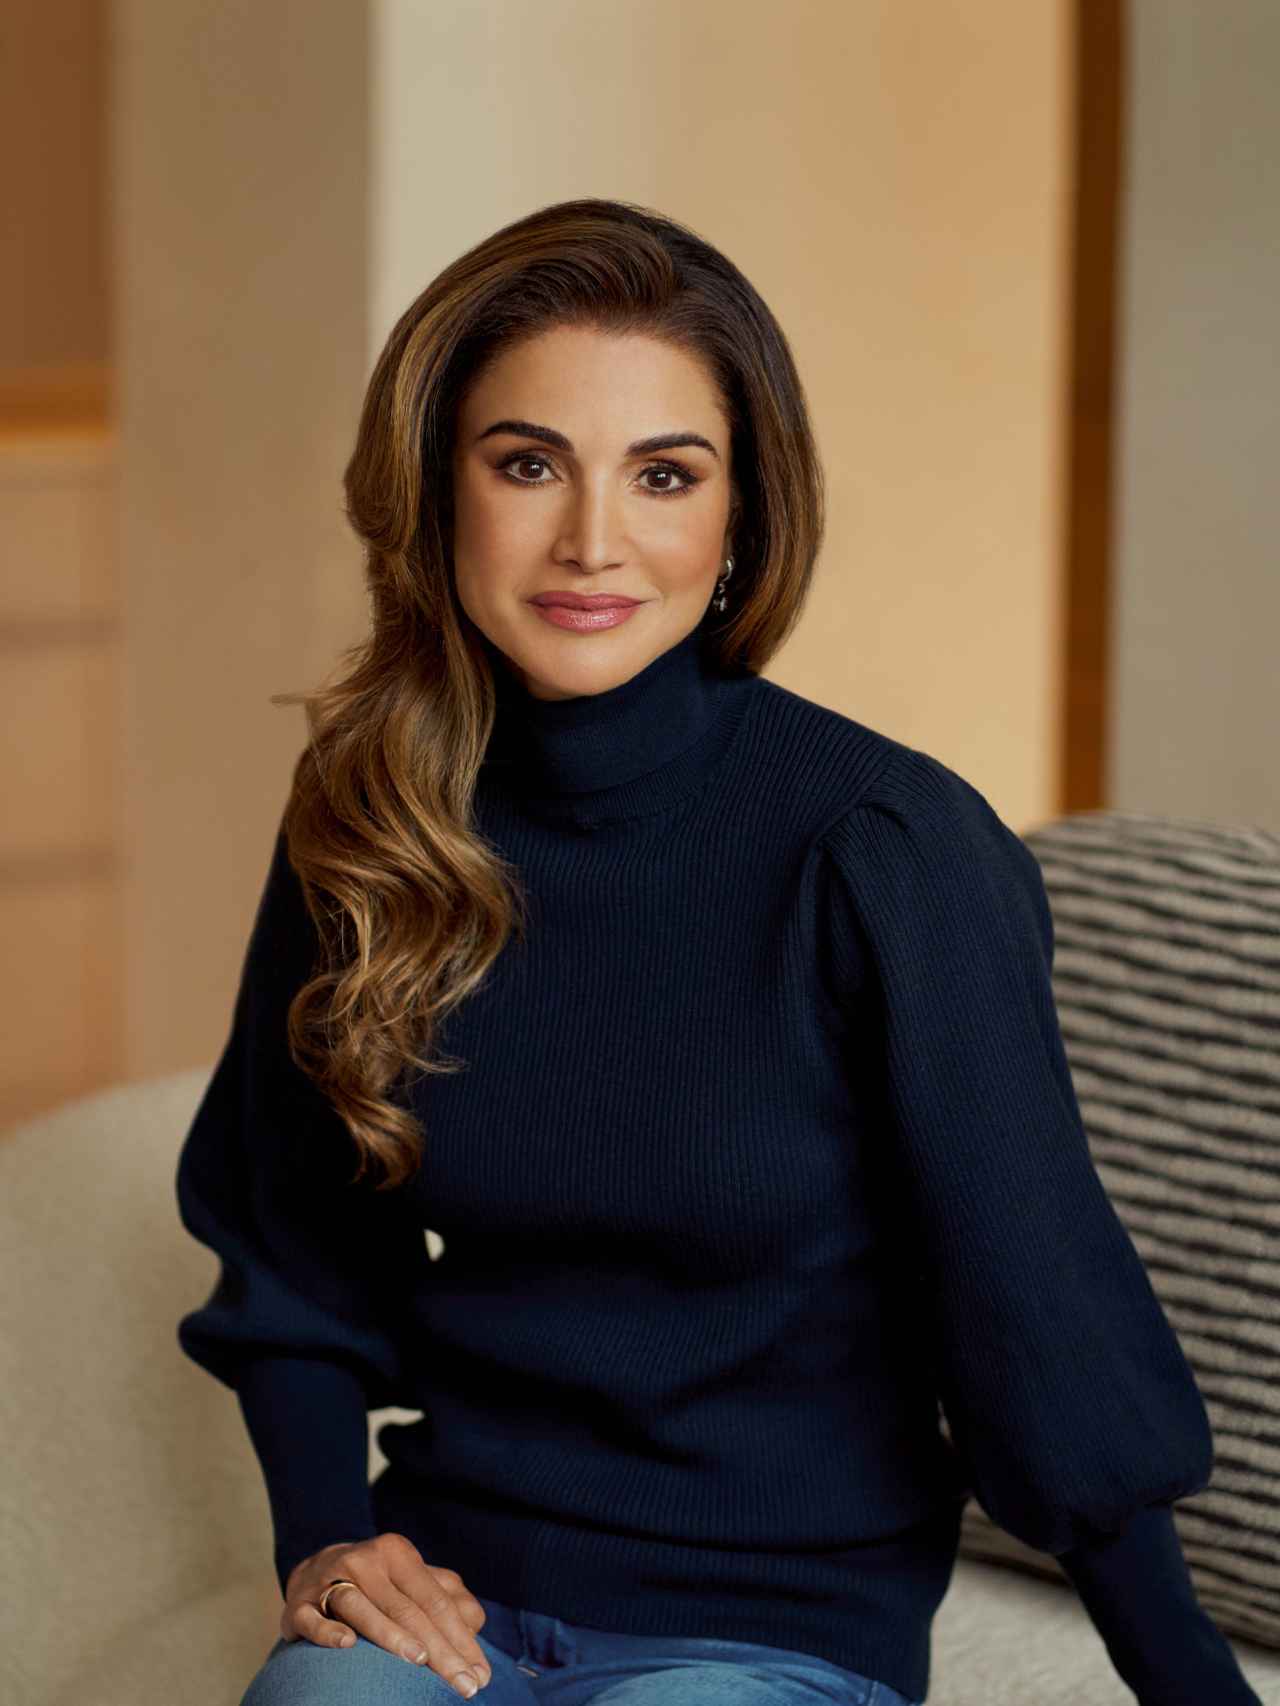 Rania de Jordania con un 'look' informal, en una de las imágenes difundidas por la Casa Real jordana.